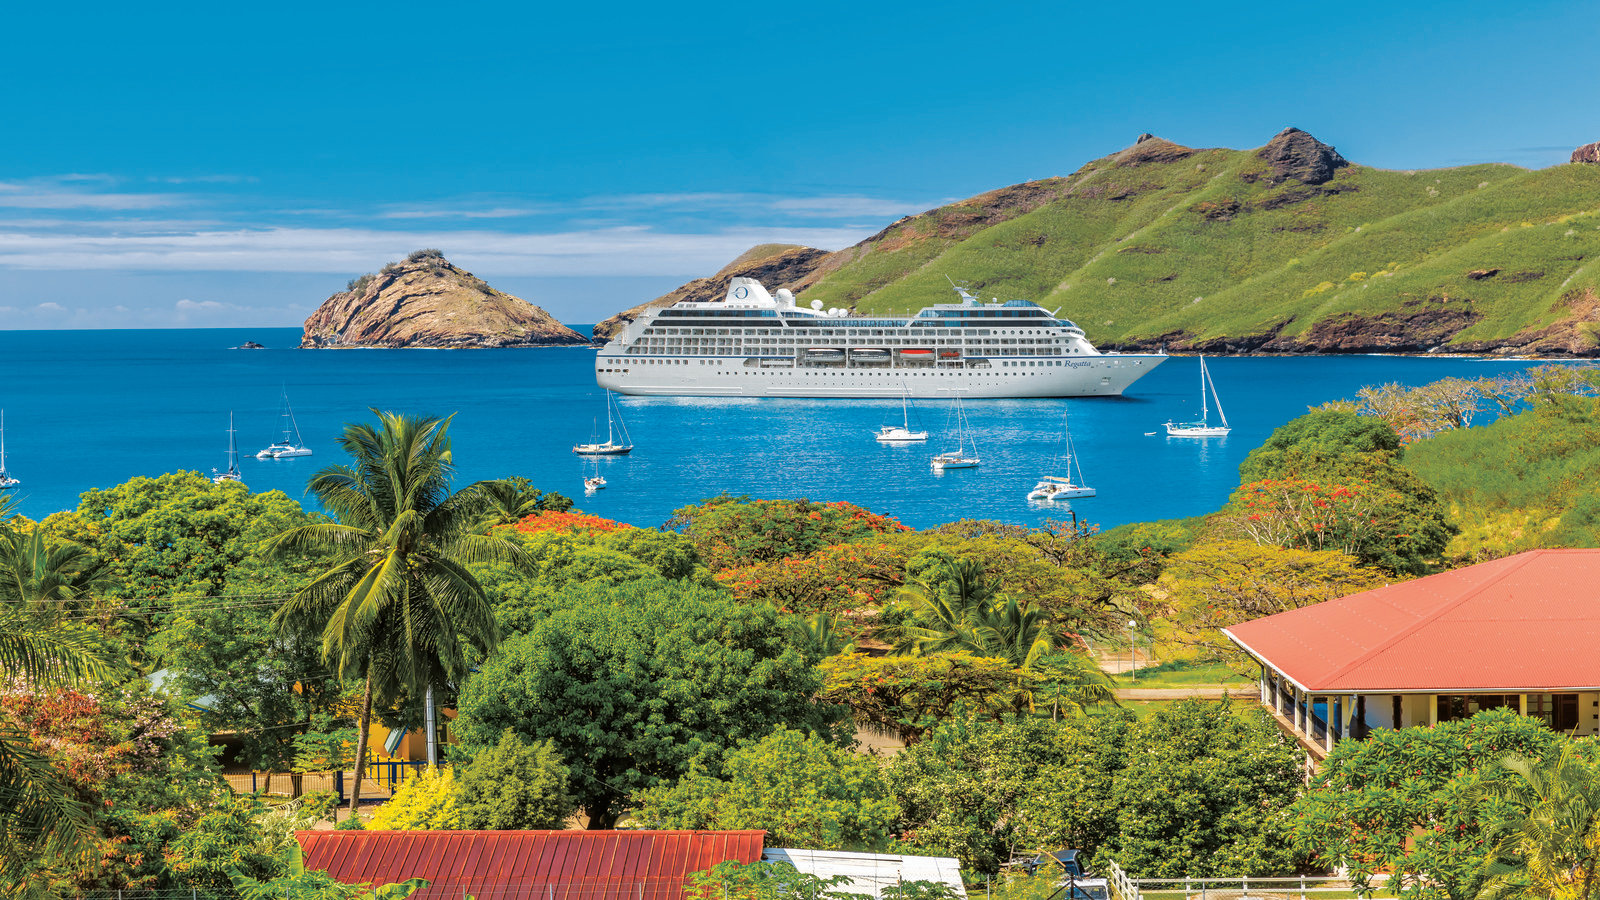 Nuku HivaOceania RegattaOceania Cruises